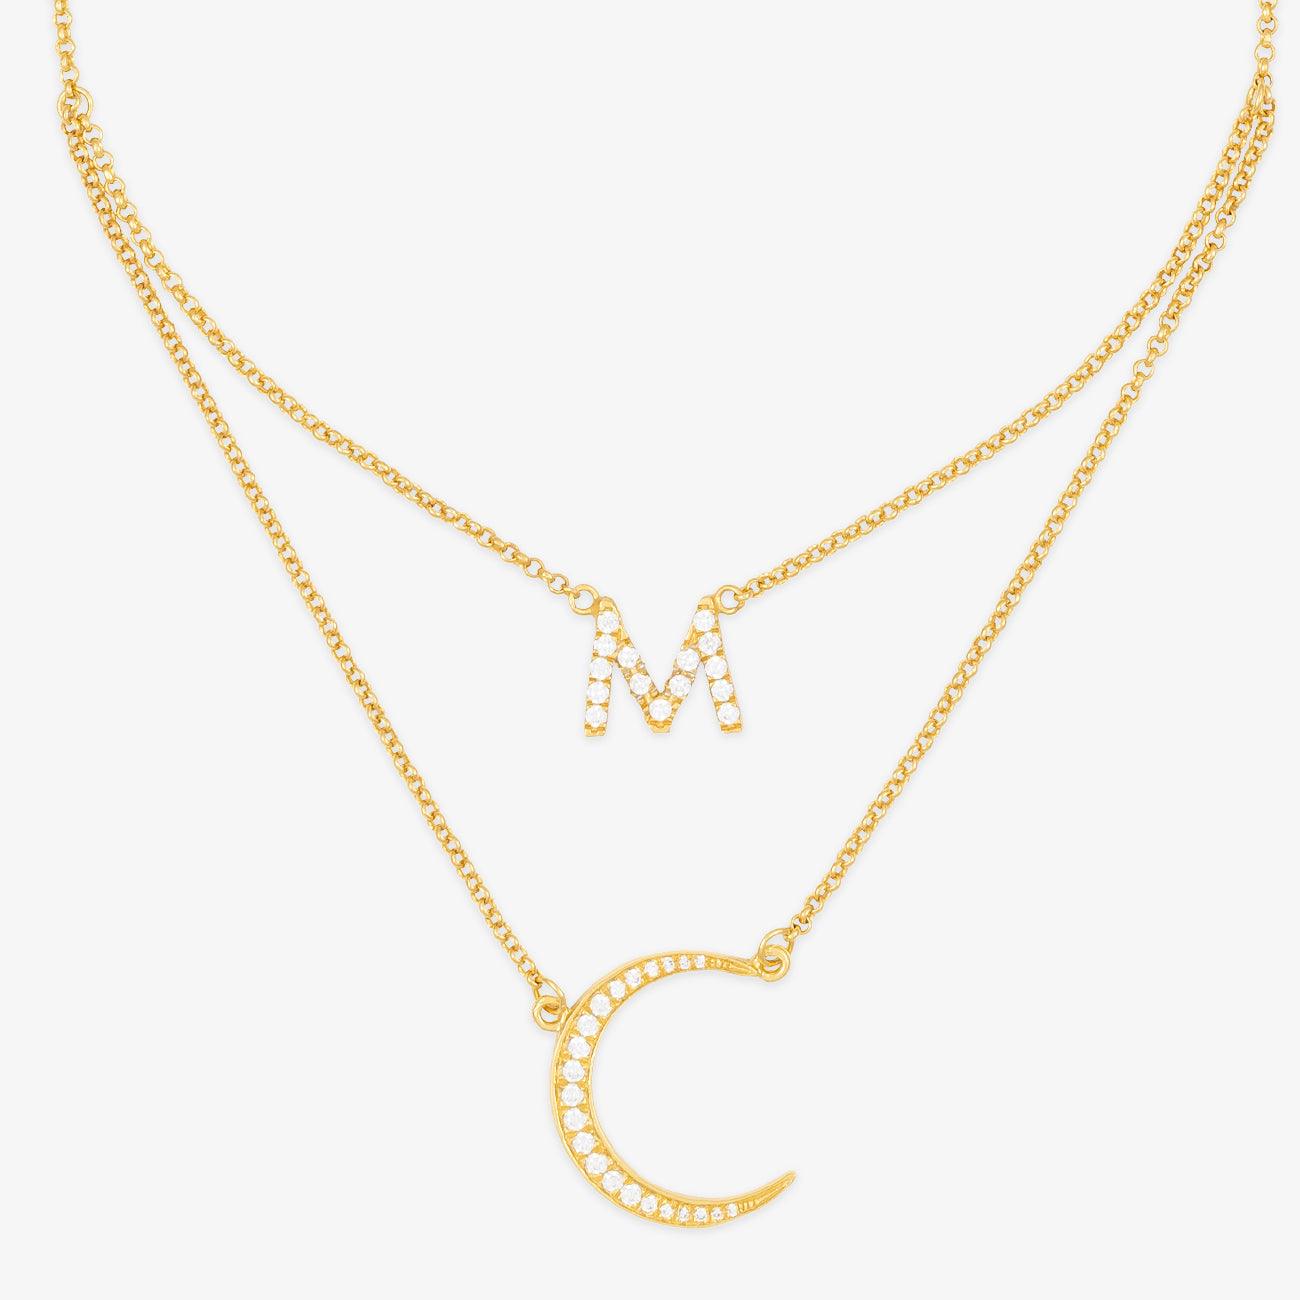 herzschmuck Customize Half-Moon Necklace